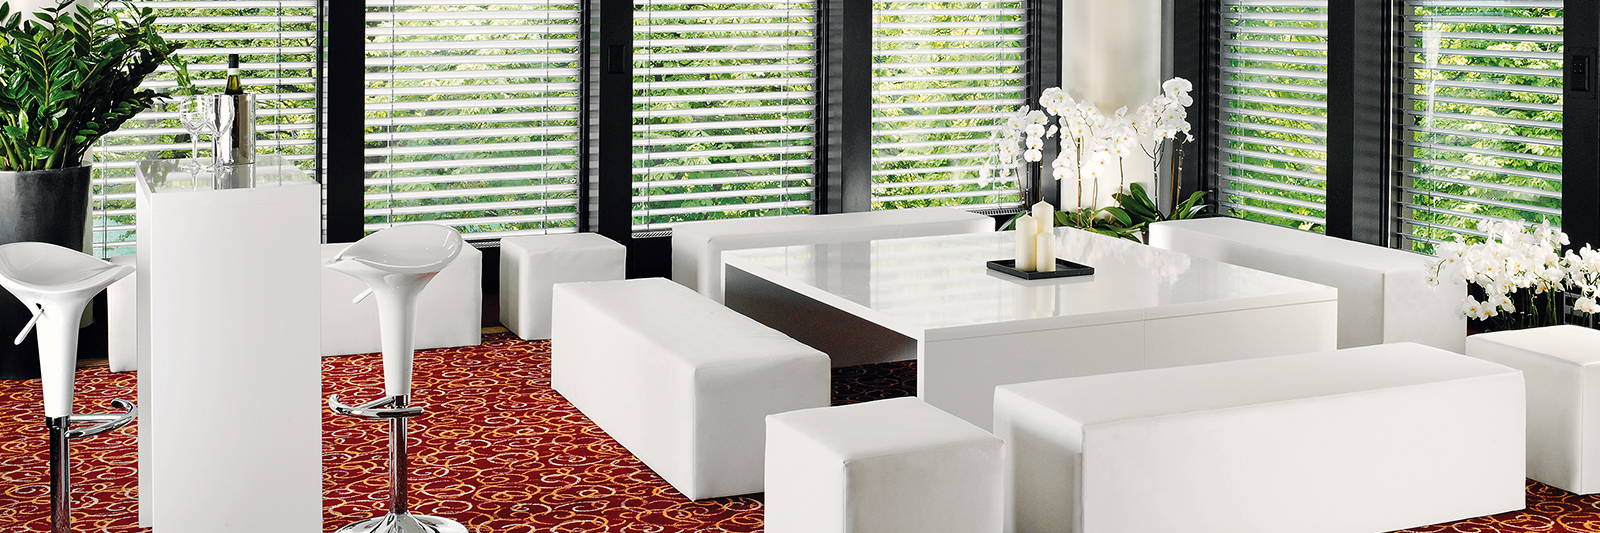 Grosser Loungetisch mieten mit Sitzwürfel und Sitzbank für Firmen Anlass und Event